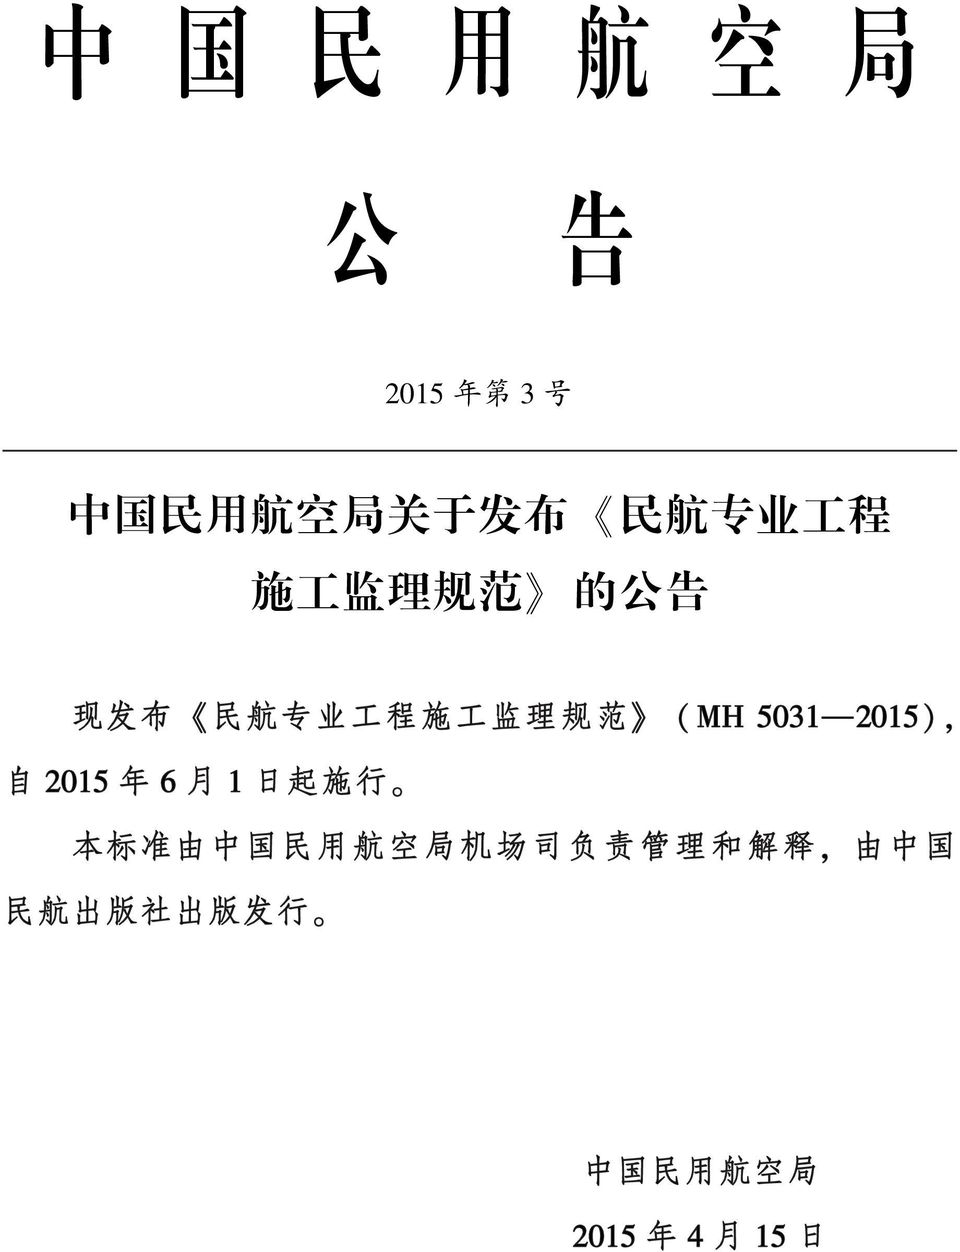 50312015) ꎬ 自 2015 年 6 月 1 日 起 施 行 ꎮ 本 标 准 由 中 国 民 用 航 空 局 机 场 司